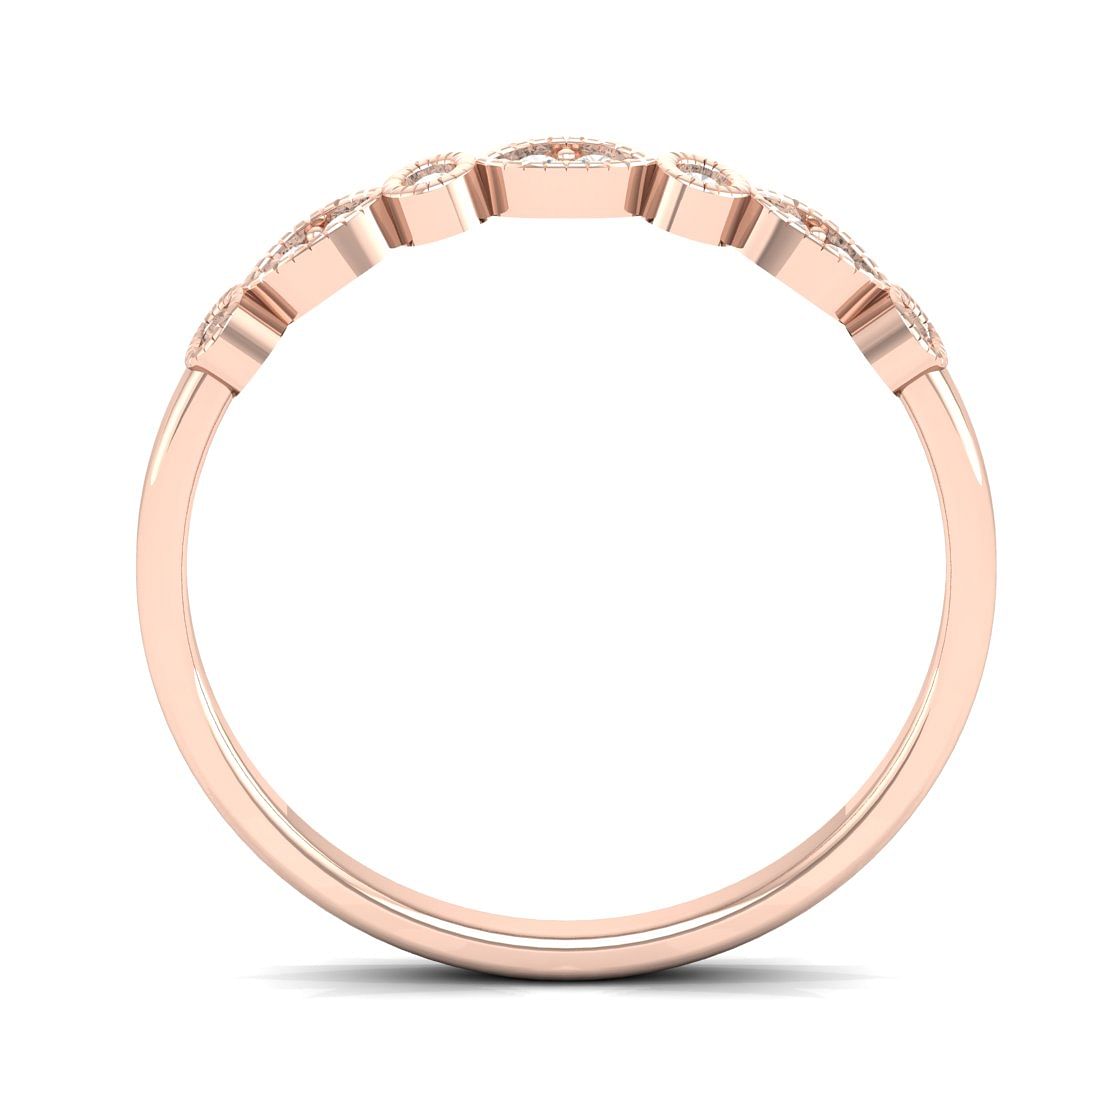 Light weight natalia rose gold diamond ring for female